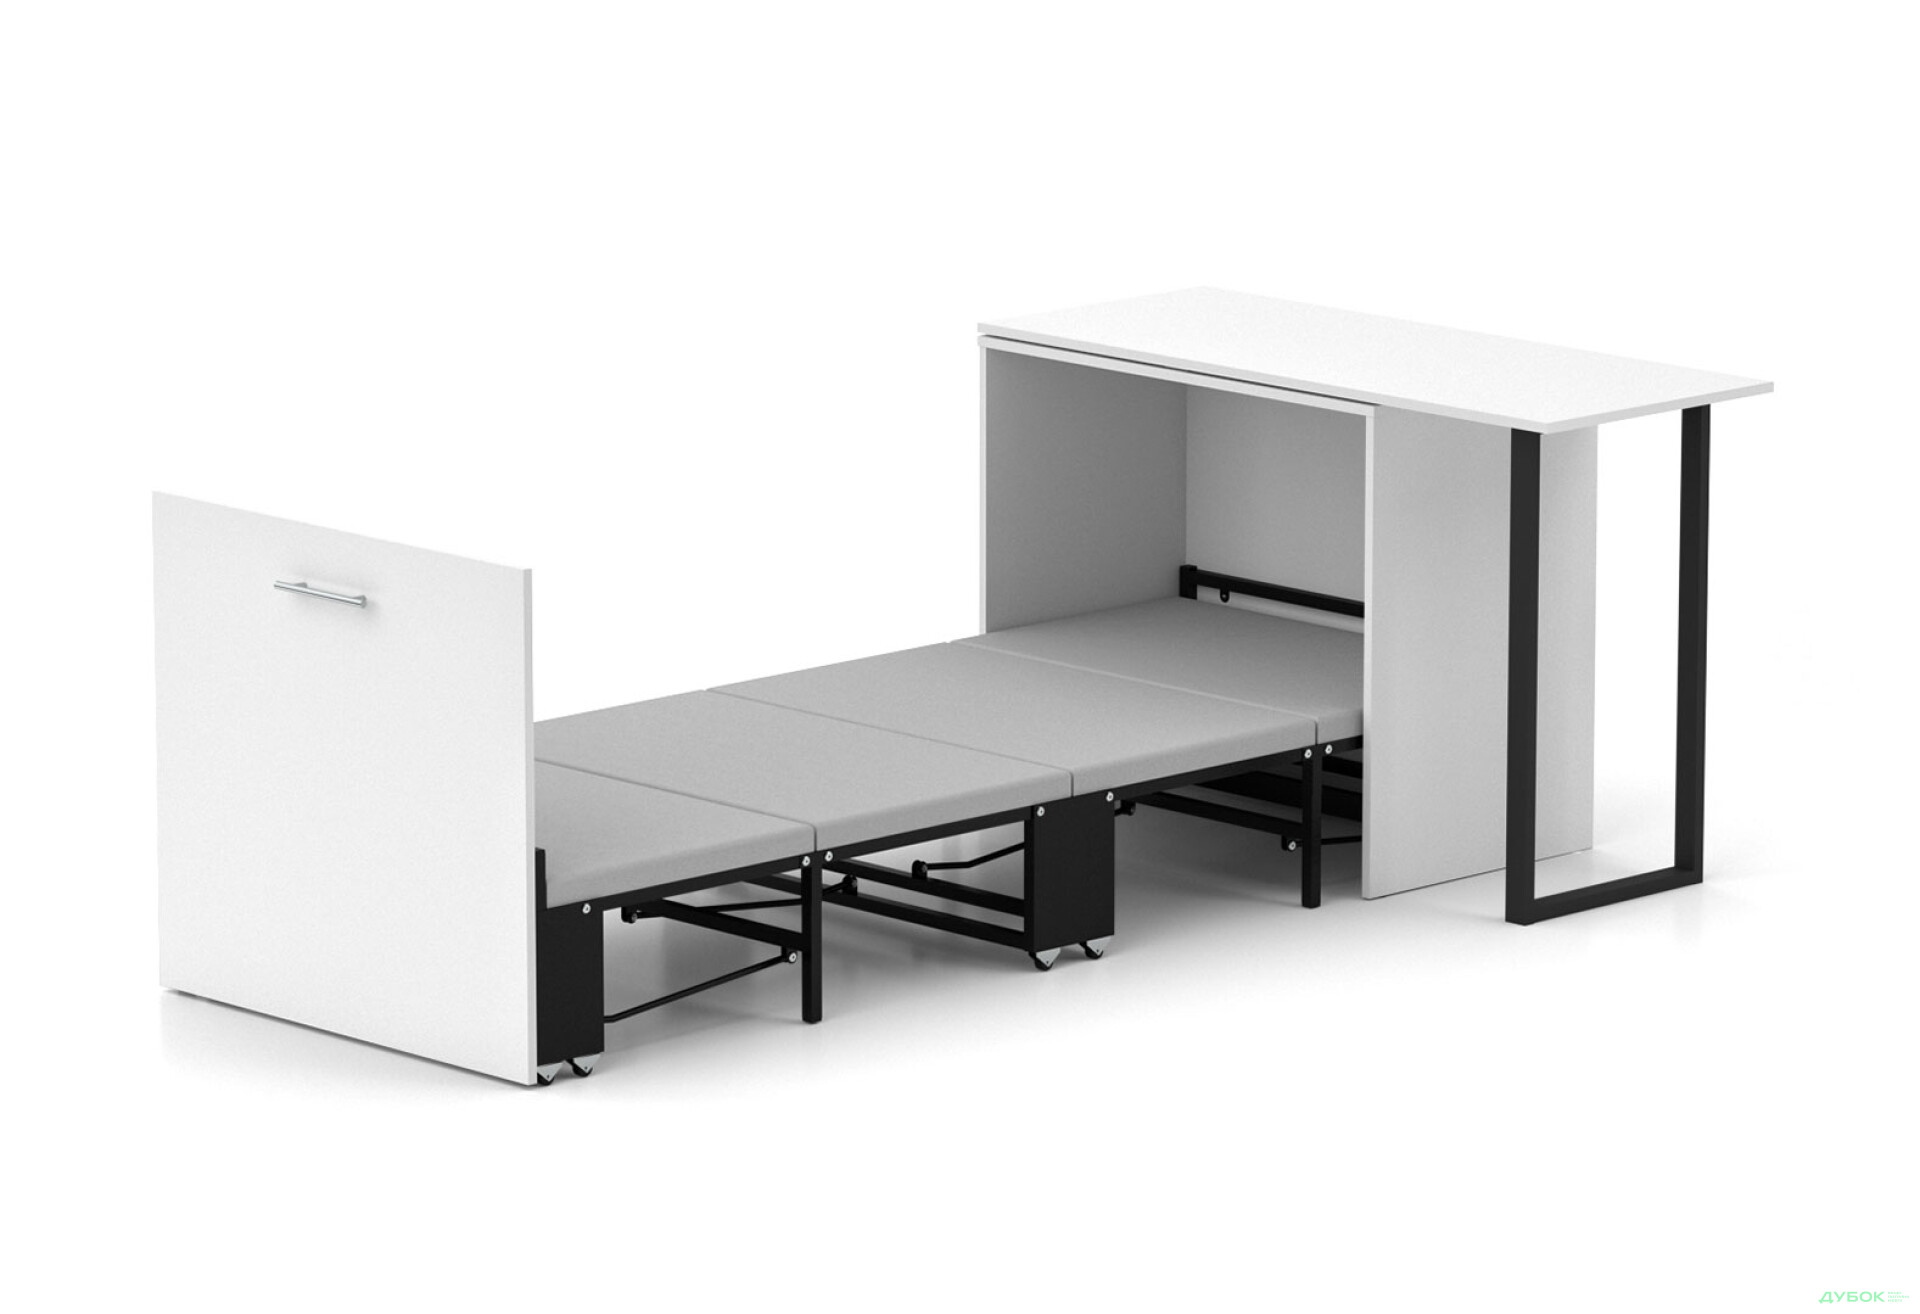 Фото 1 - Кровать-трансформер Knap Knap Sirim / Сирим-D (3 в 1) 80х200 см со столом, белый